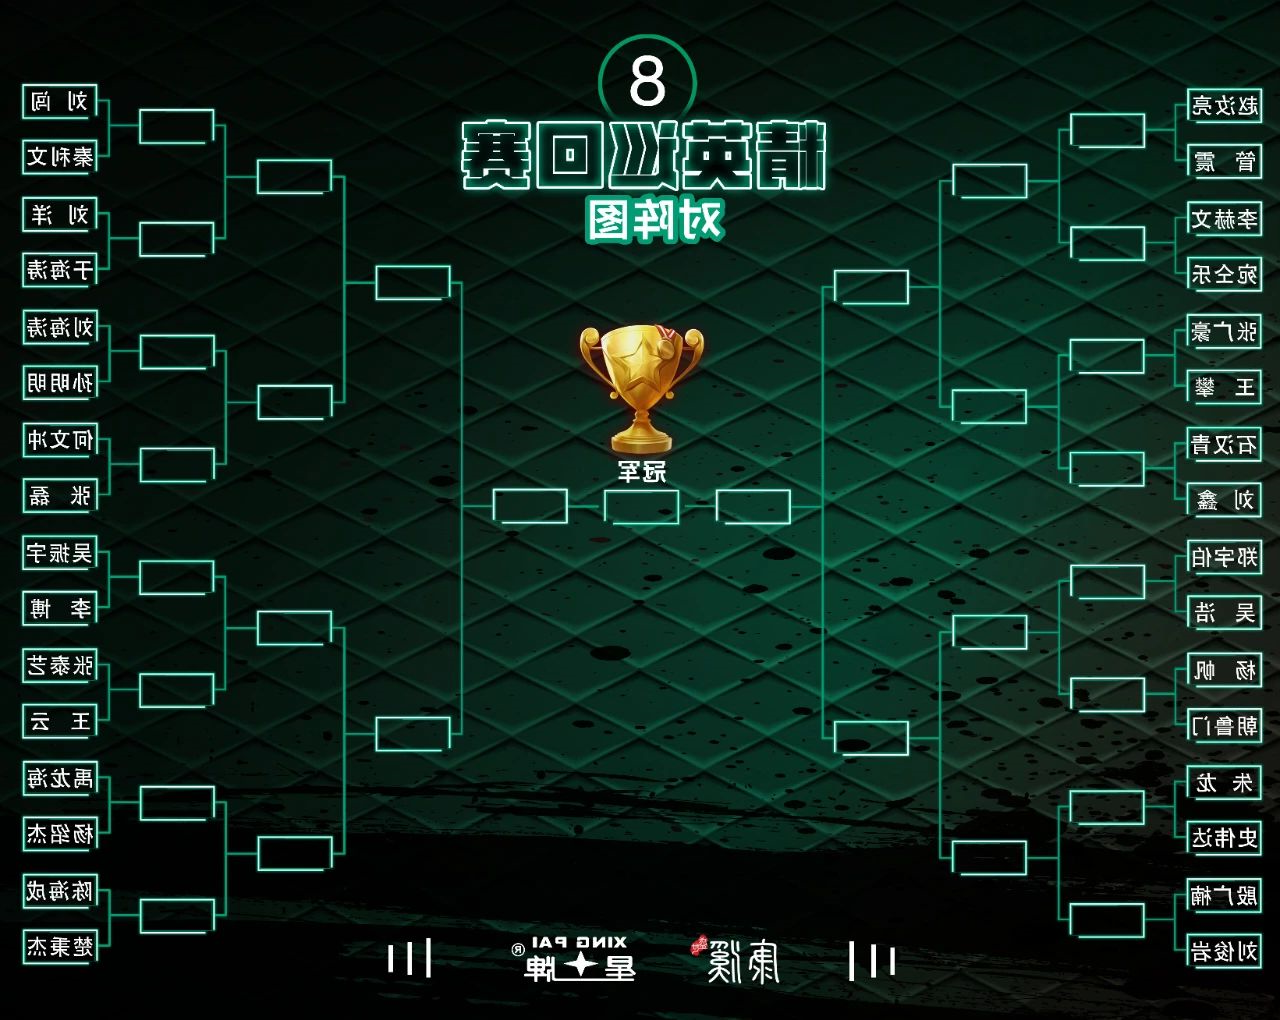 中式台球精英巡回赛第二站即将揭幕 kok娱乐平台
继续助力赛事